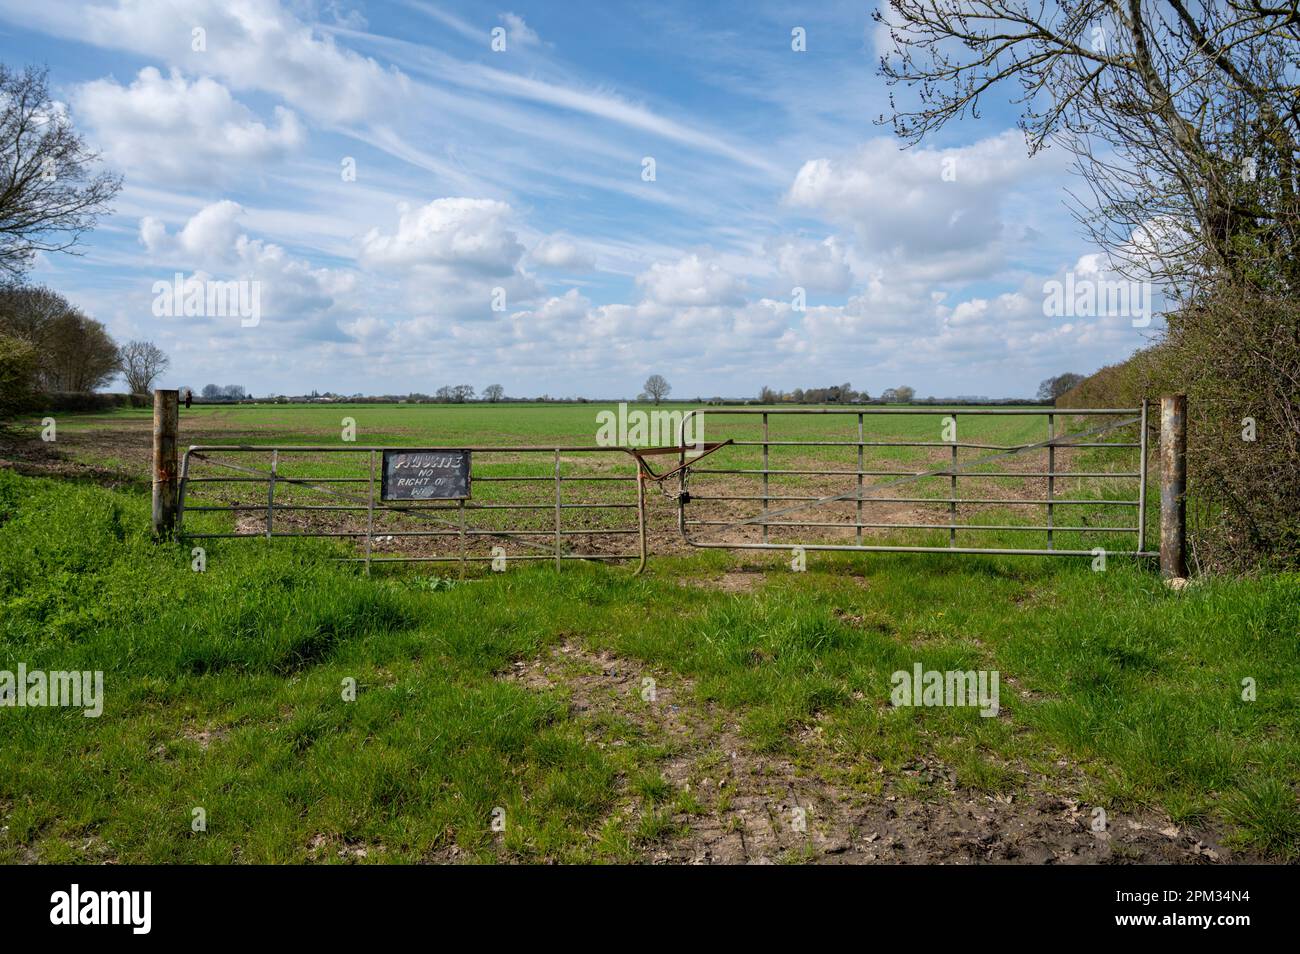 Un cancello chiuso e un cartello privato NO Right of Way all'ingresso di un campo nel Cambridgeshire Fens UK Foto Stock